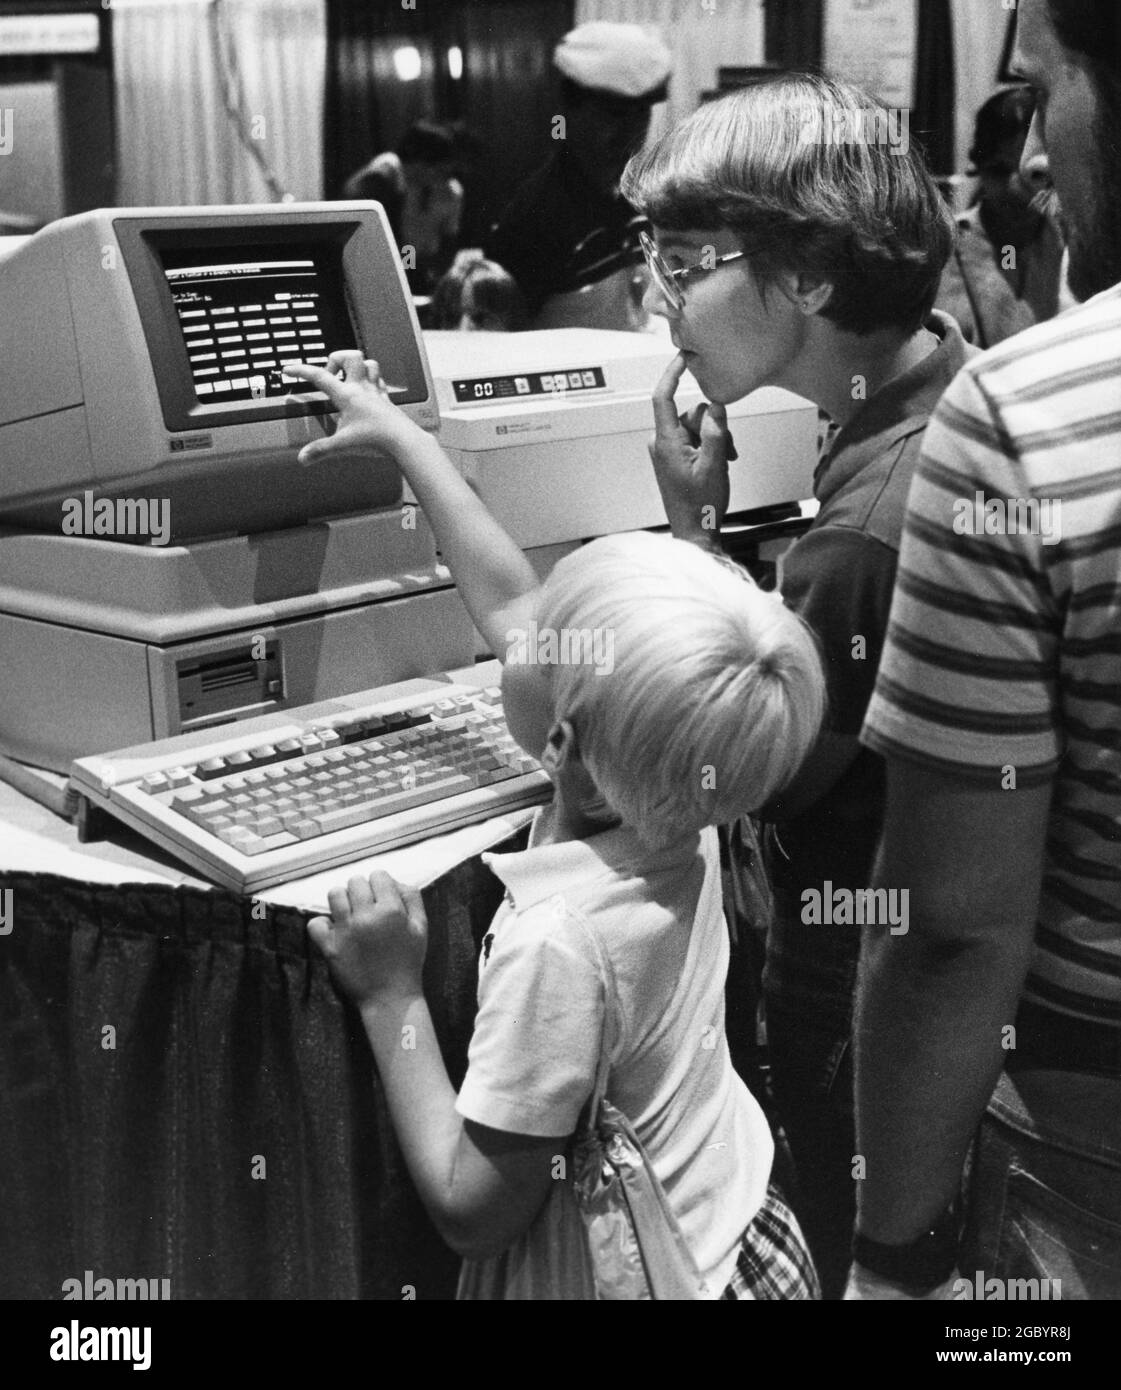 Austin, Texas, USA, um 1986: Der junge Mann schaut sich den neuen PC an, während seine Mutter auf der Messe für Technologiekonventionen schaut. ©Bob Daemmrich Stockfoto